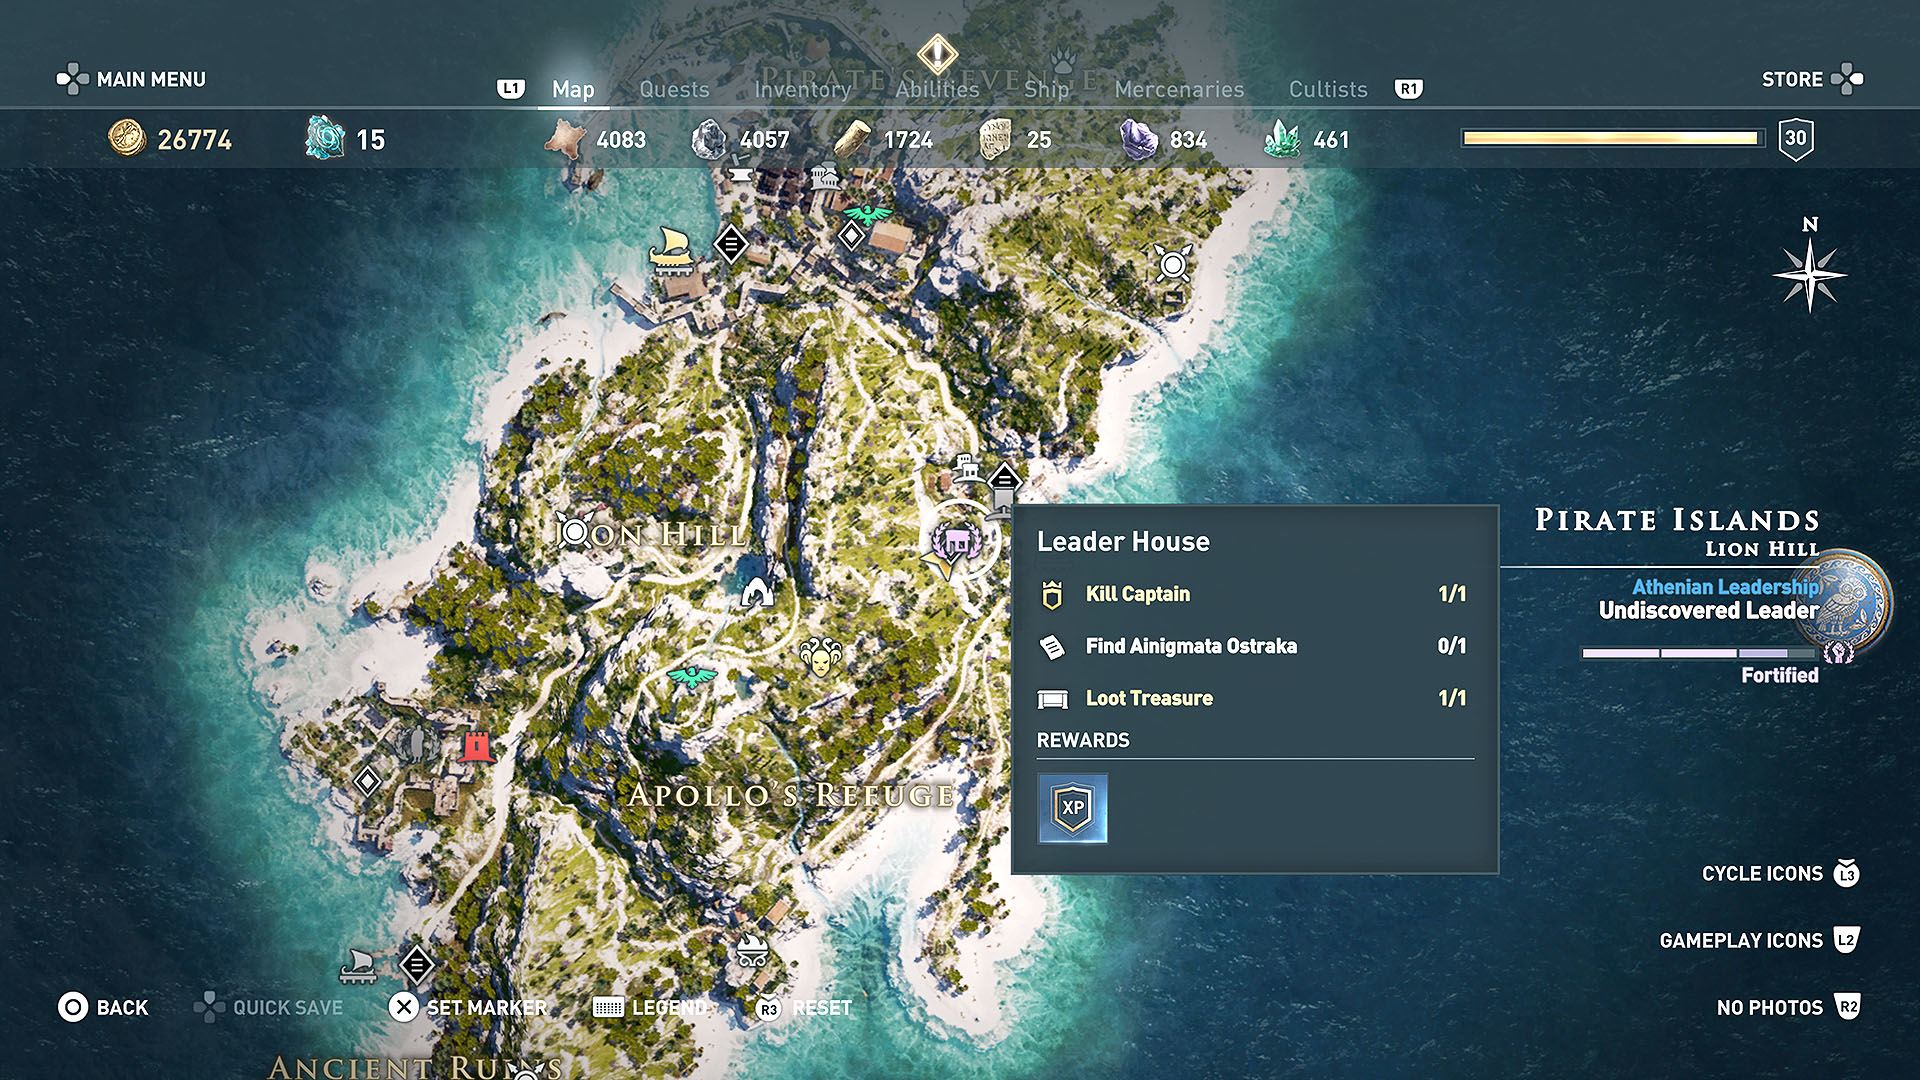 Обсидиановые острова в ассасин крид. Assassin's Creed Odyssey обсидиановые острова. Обсидиановые острова в ассасин Крид Одиссея. Обсидиановые острова культист. Полная карта Коринфия.